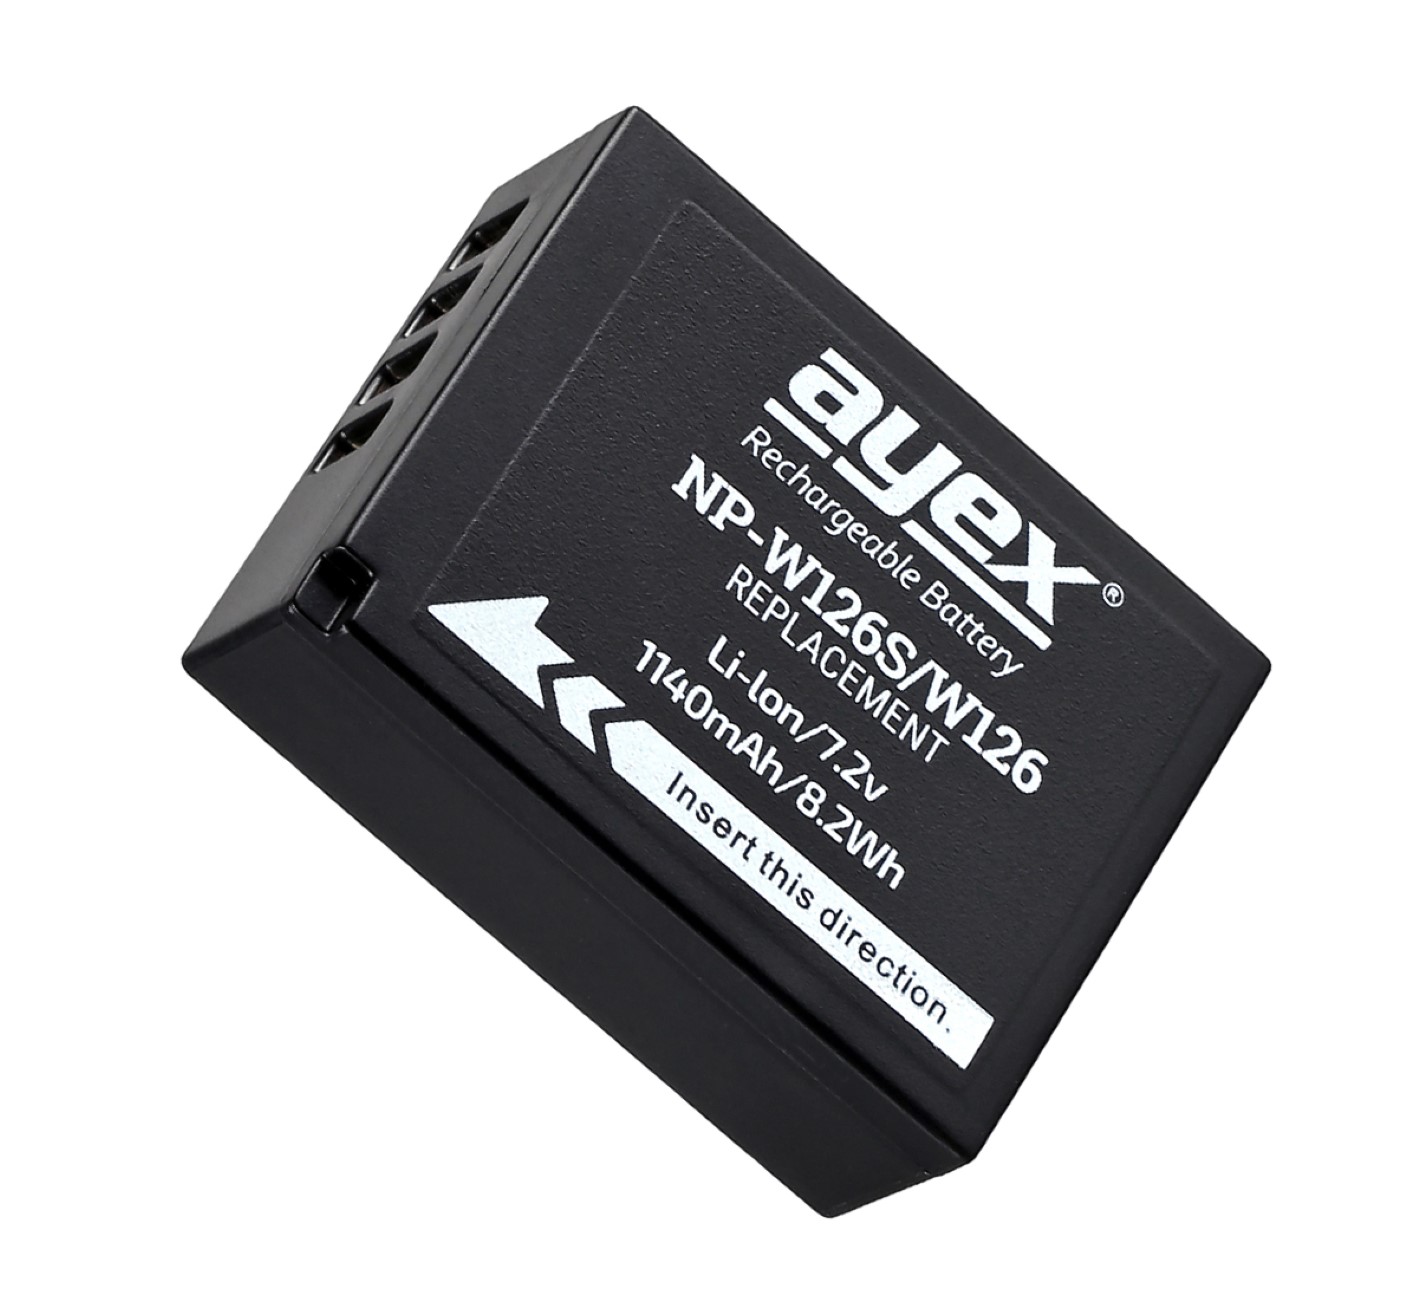 ayex NP-W126S Ersatz Akku 2 Stück für Fujifilm Hervorragende Akkuleistung verbesserter Thermischer Schutz